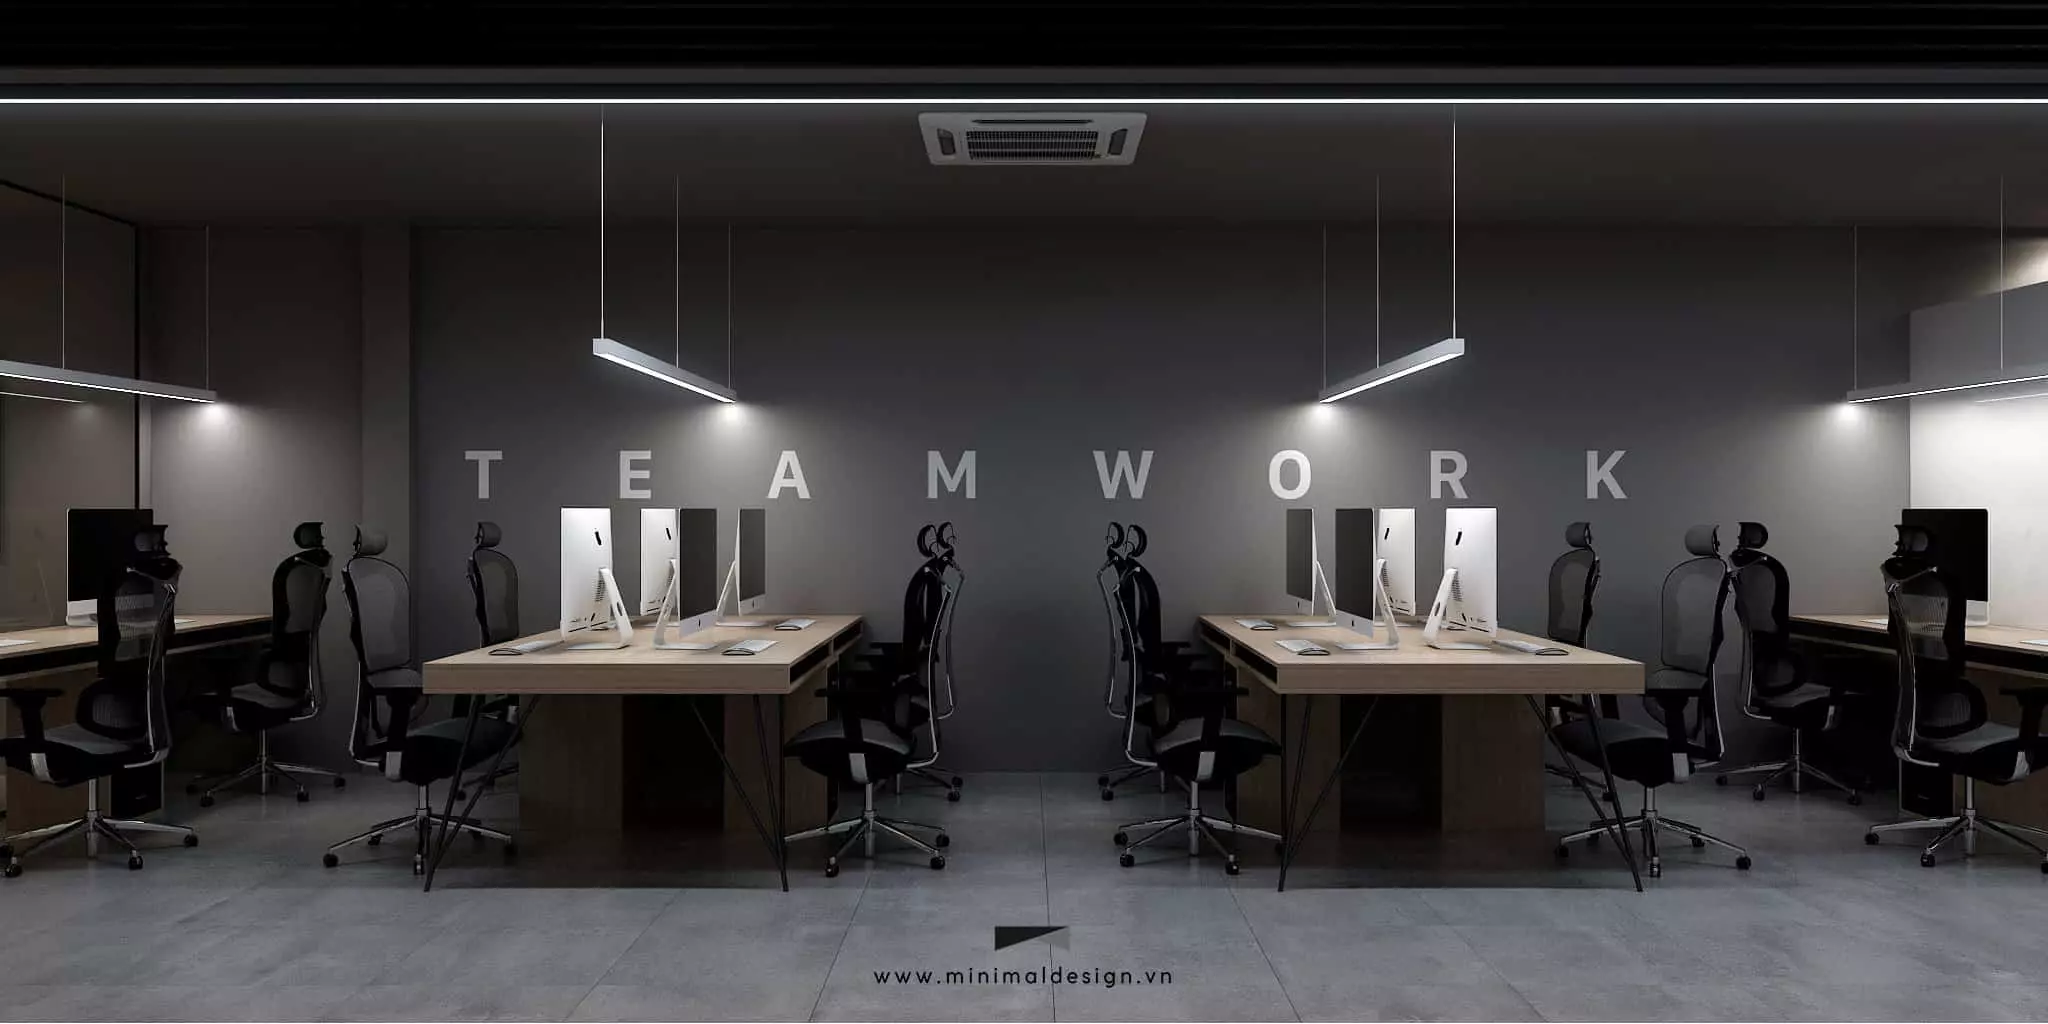 Công ty tư vấn thiết kế nội thất văn phòng tại Tp.HCM uy tín với sứ mệnh mang đến không gian làm việc đầy sáng tạo và độc đáo